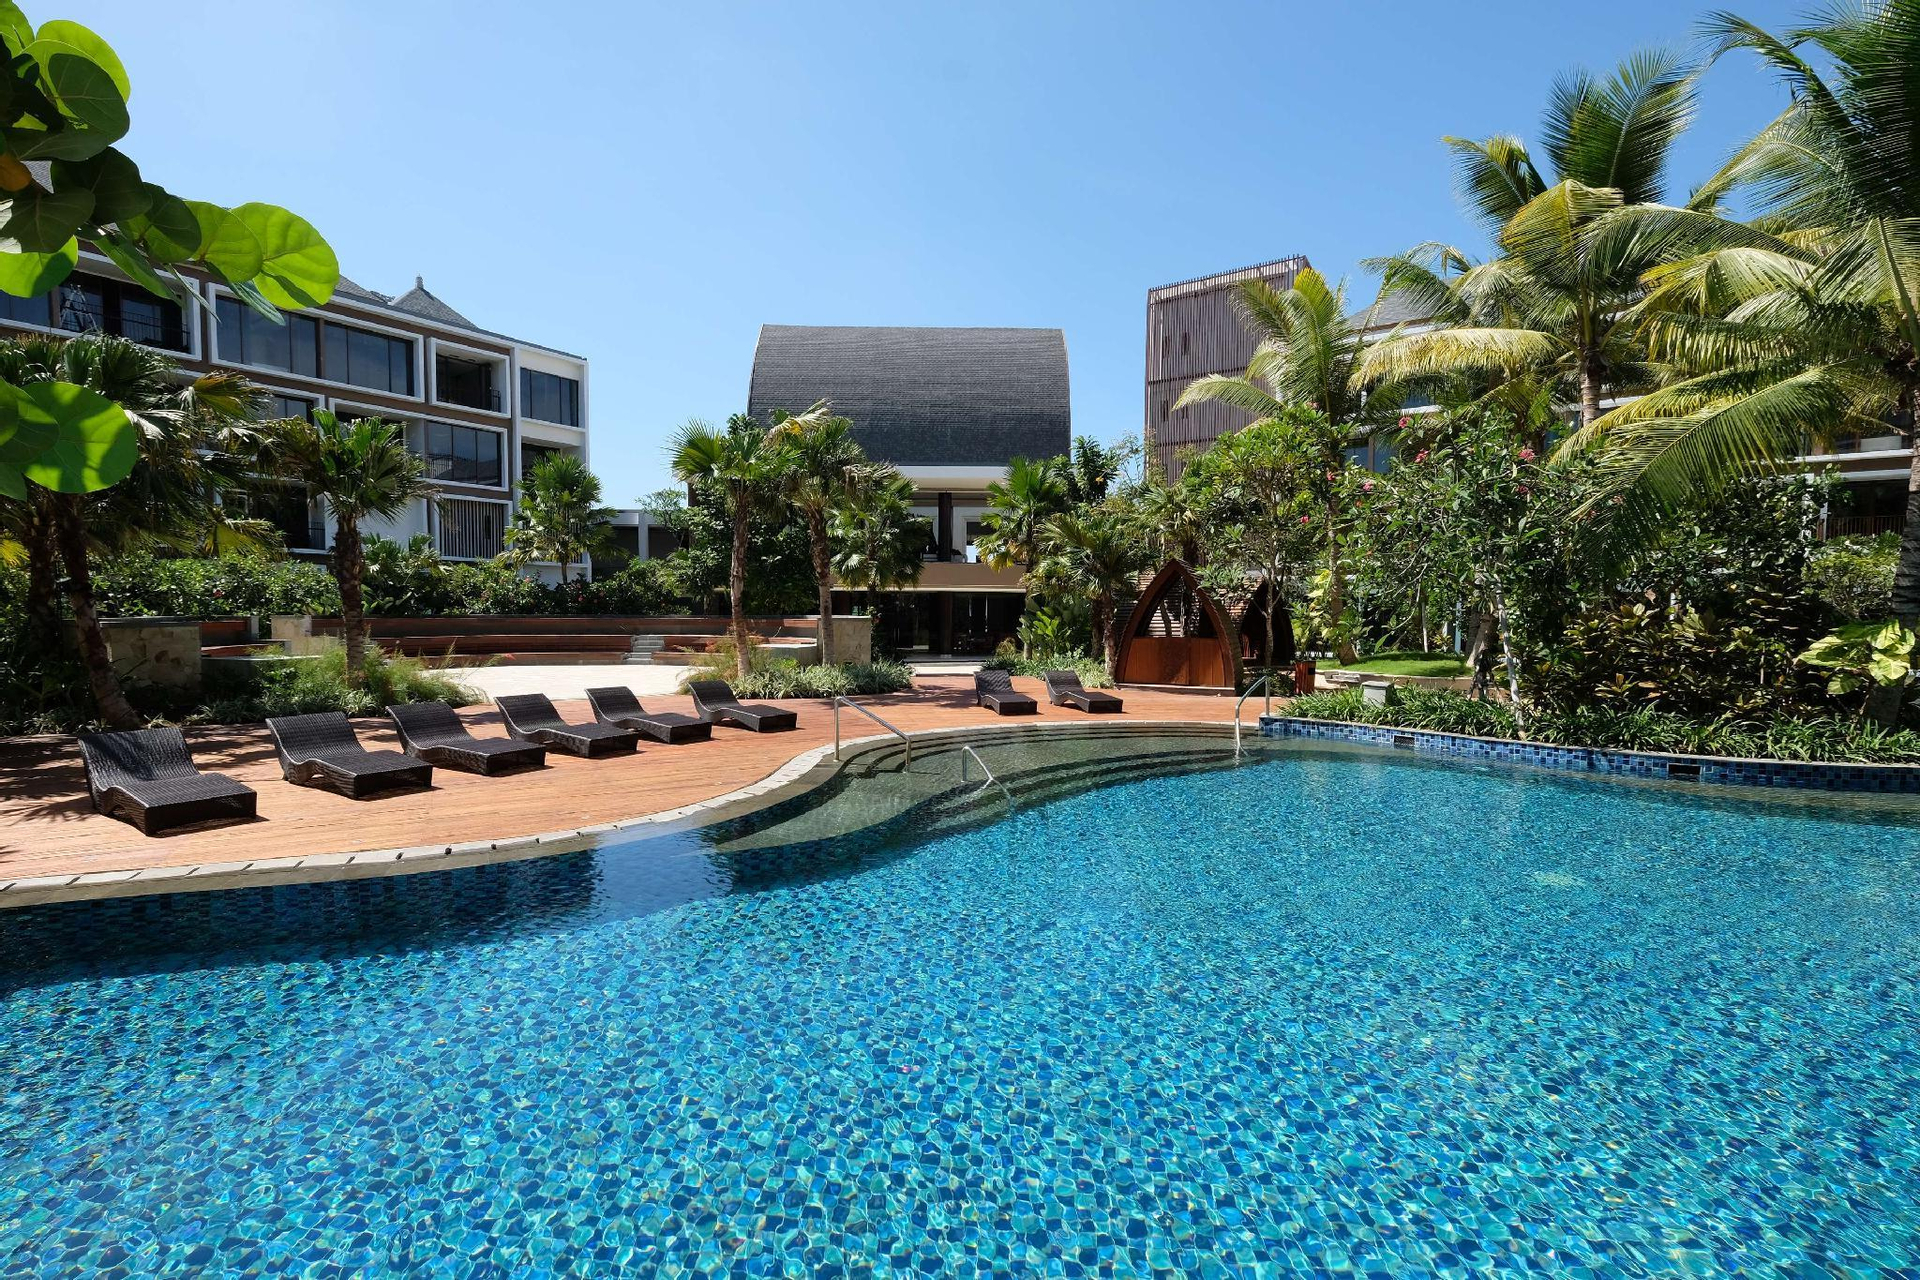 Exterior & Views 2, Golden Tulip Jineng Resort Bali, Badung